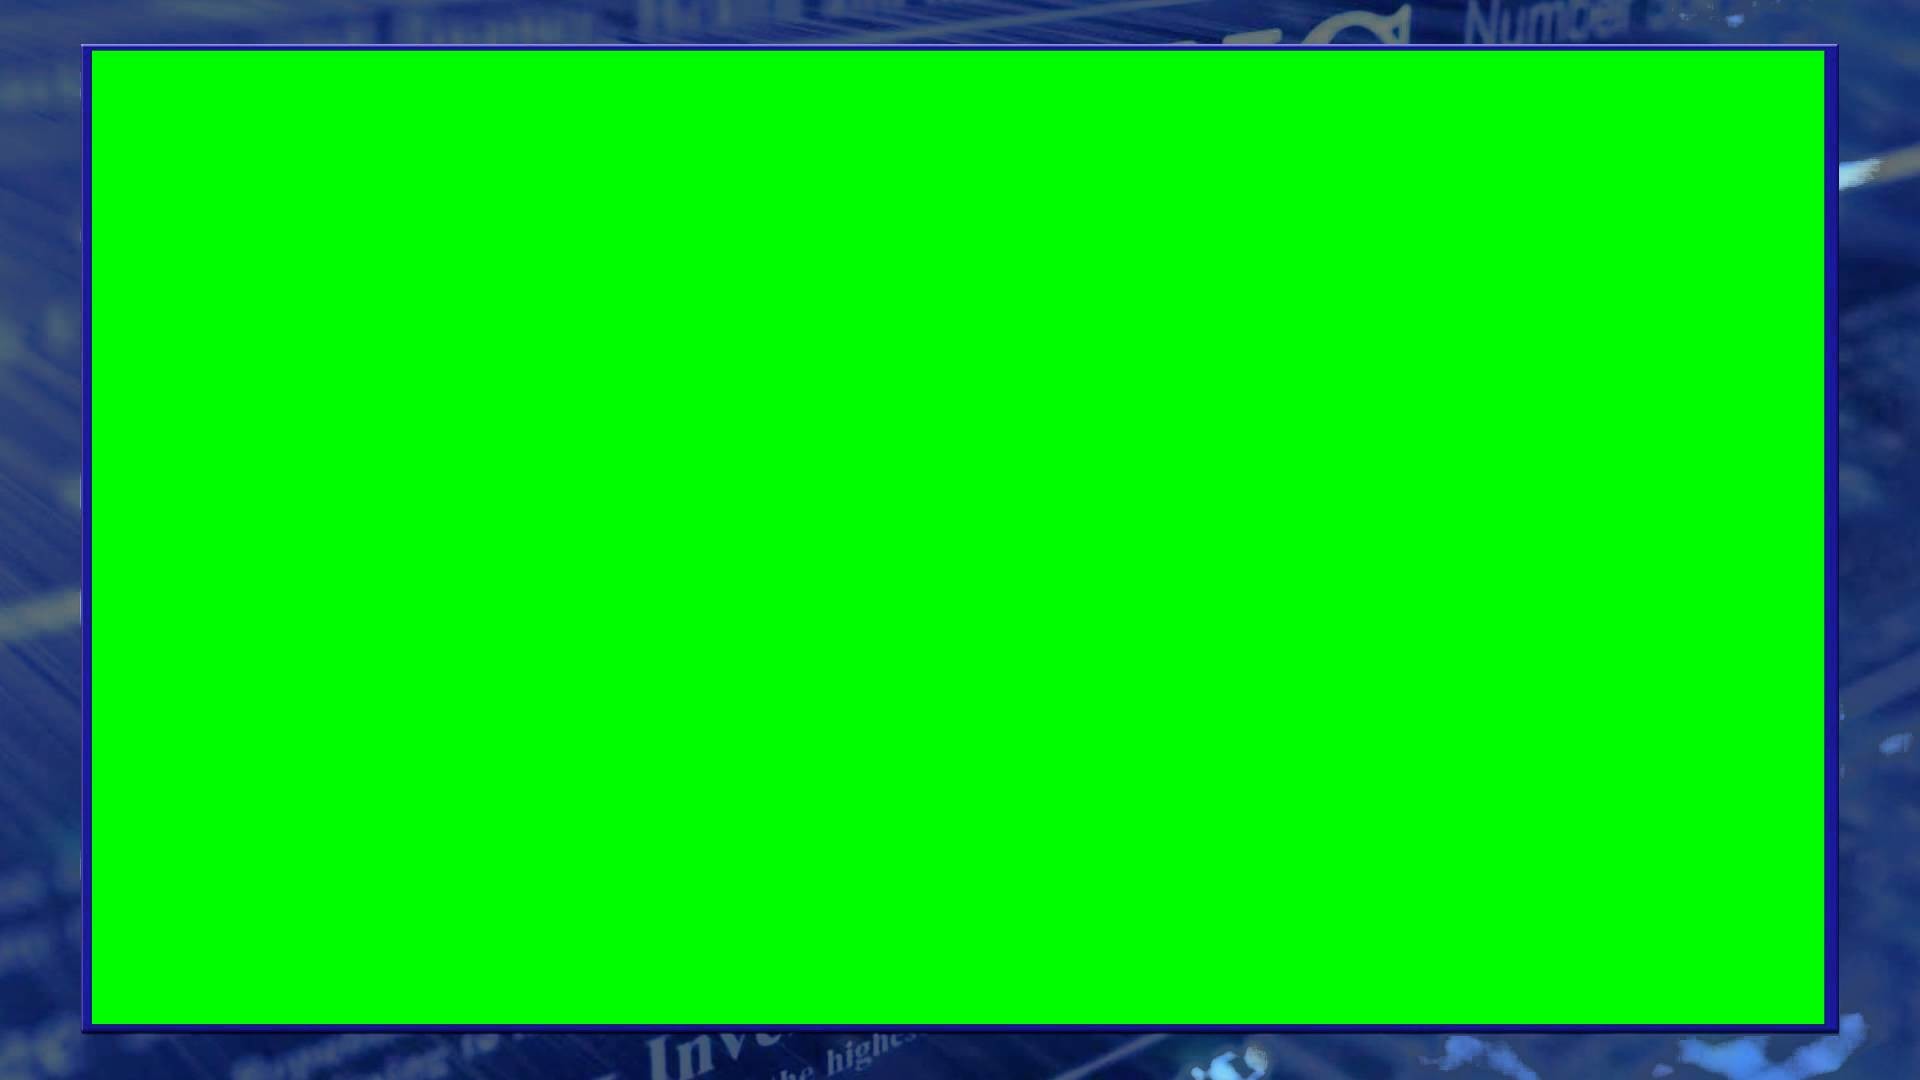 1920x1080, Green Screen News Overlay - High Resolution Green Screen Background - HD Wallpaper 